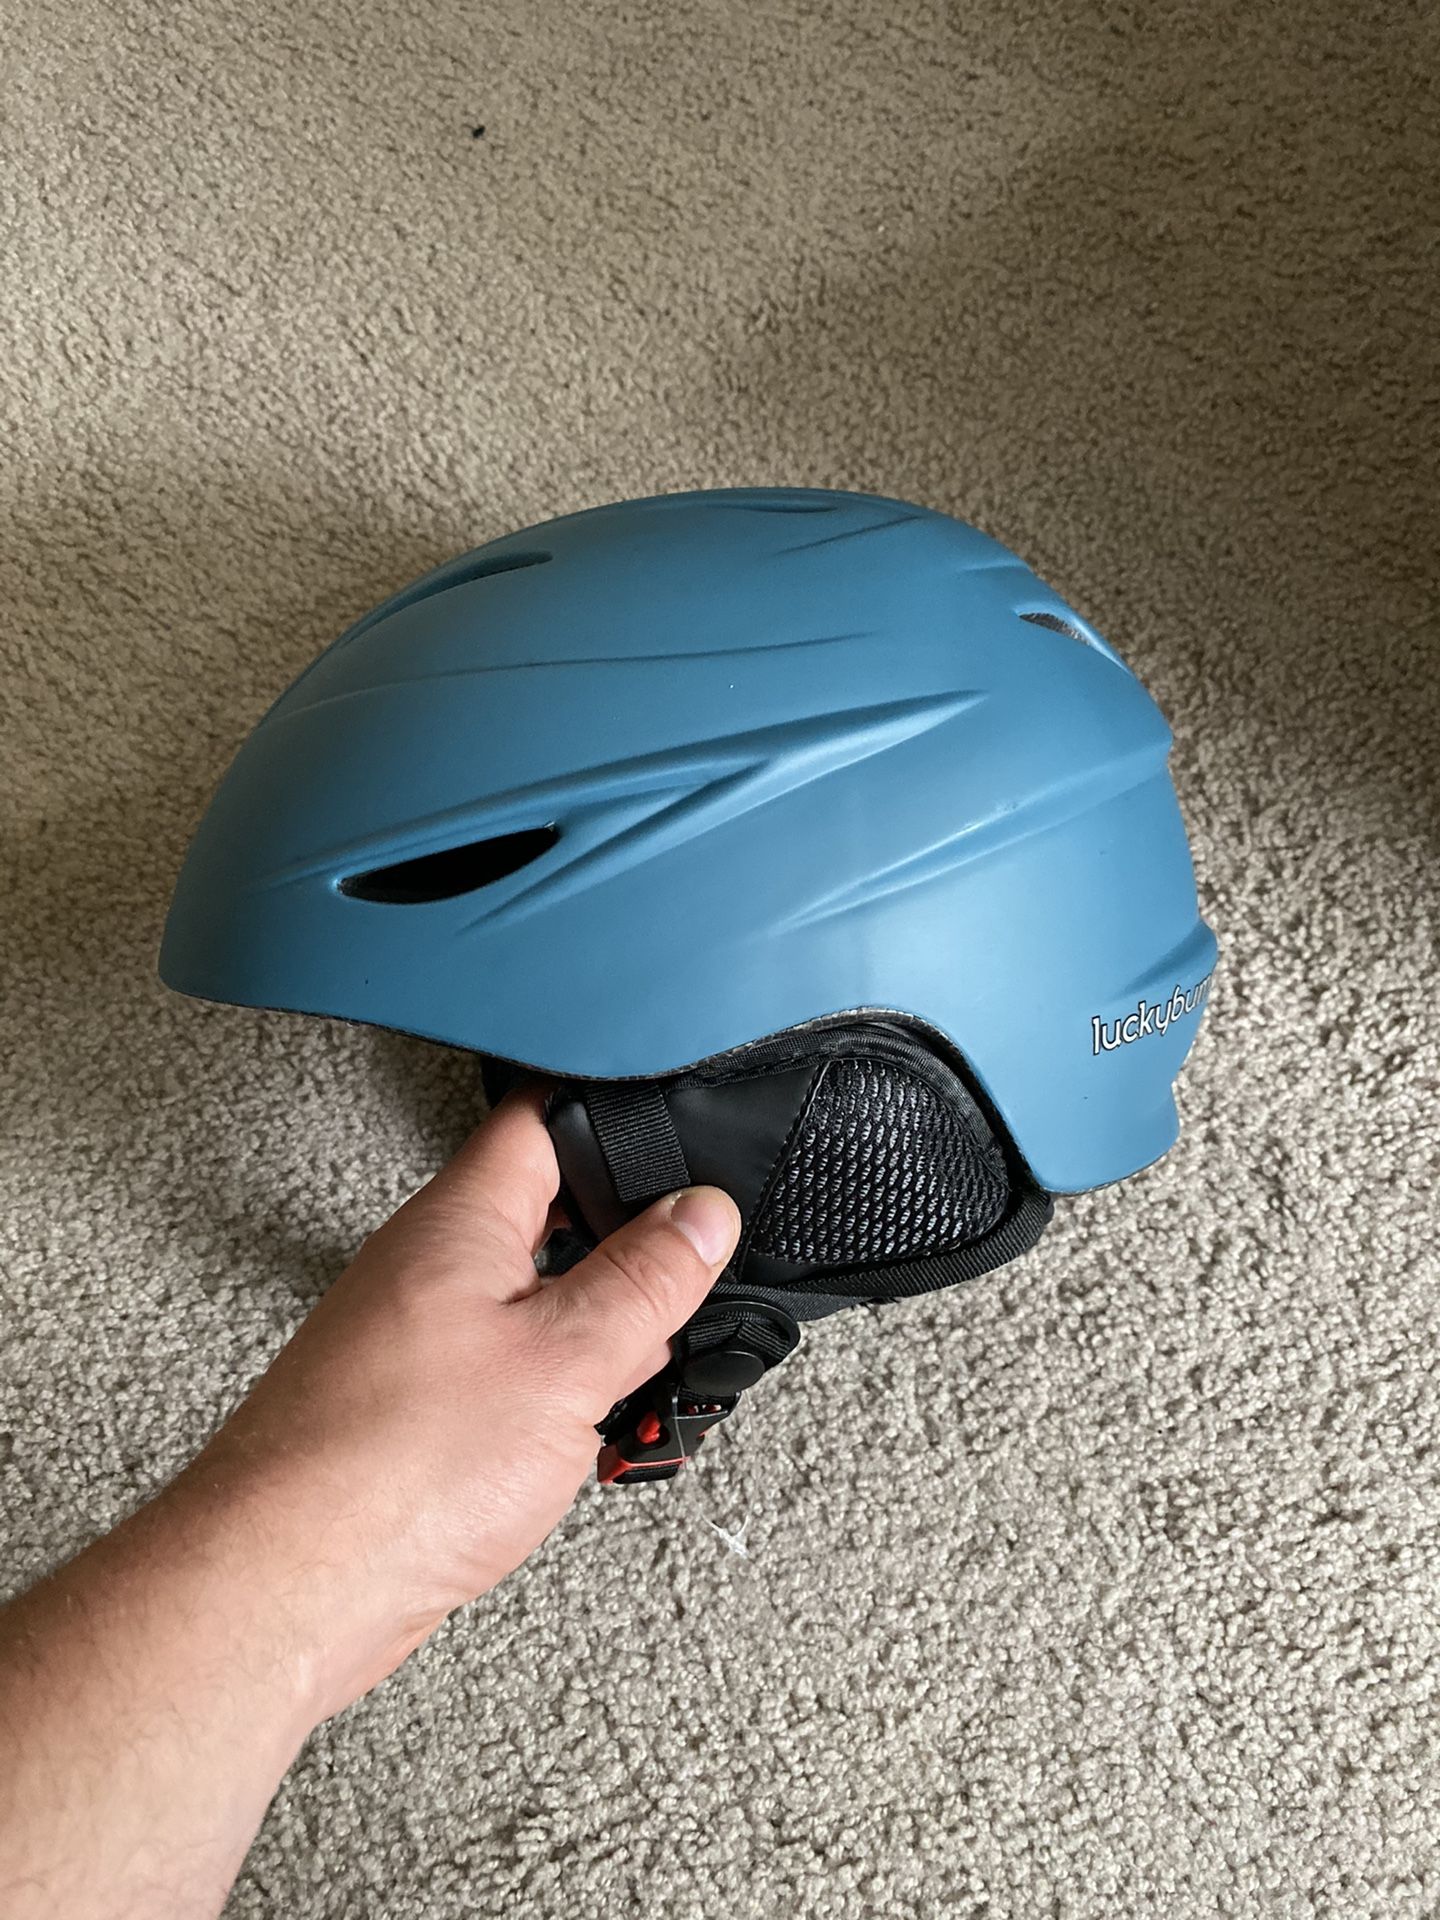 Helmet new (never used)